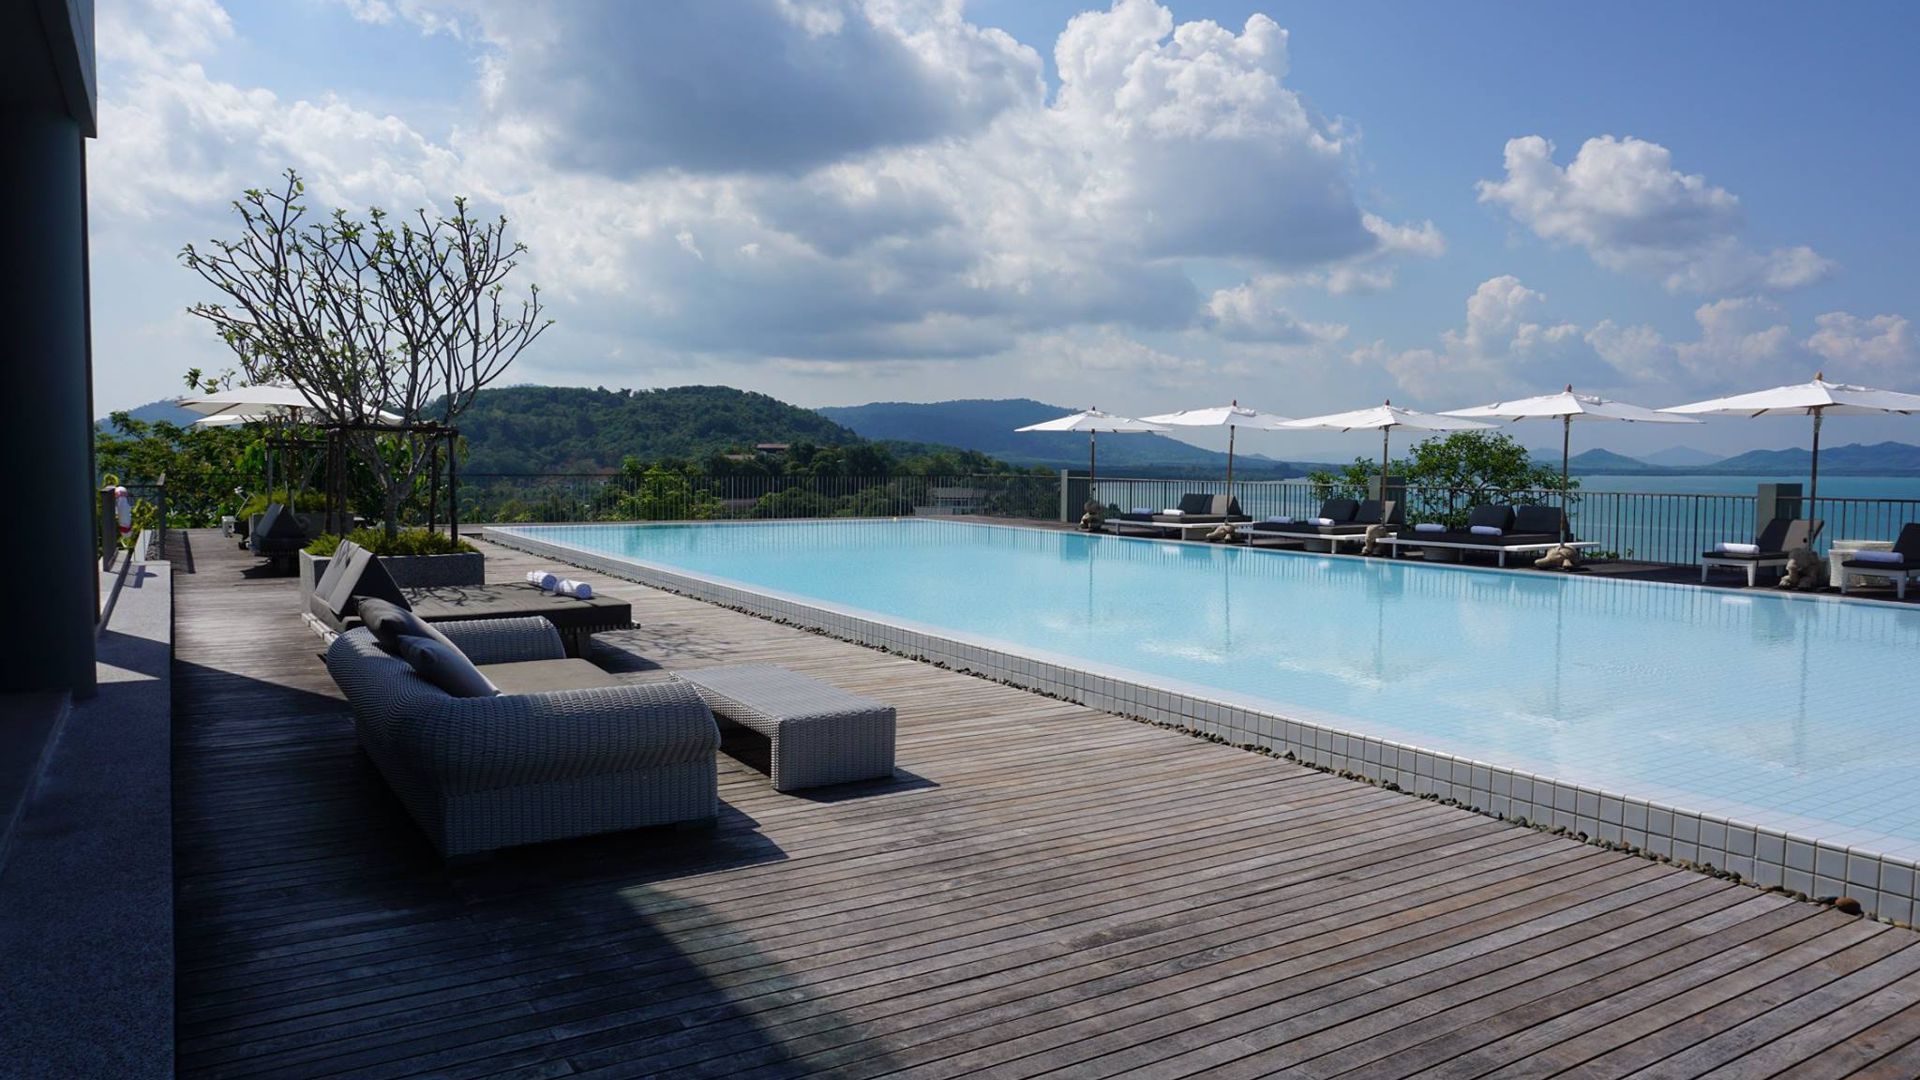 Endlose Sicht und ein traumhafter Blick am 100-Meter-langen Pool des Hotels „Como Point Yamu“.